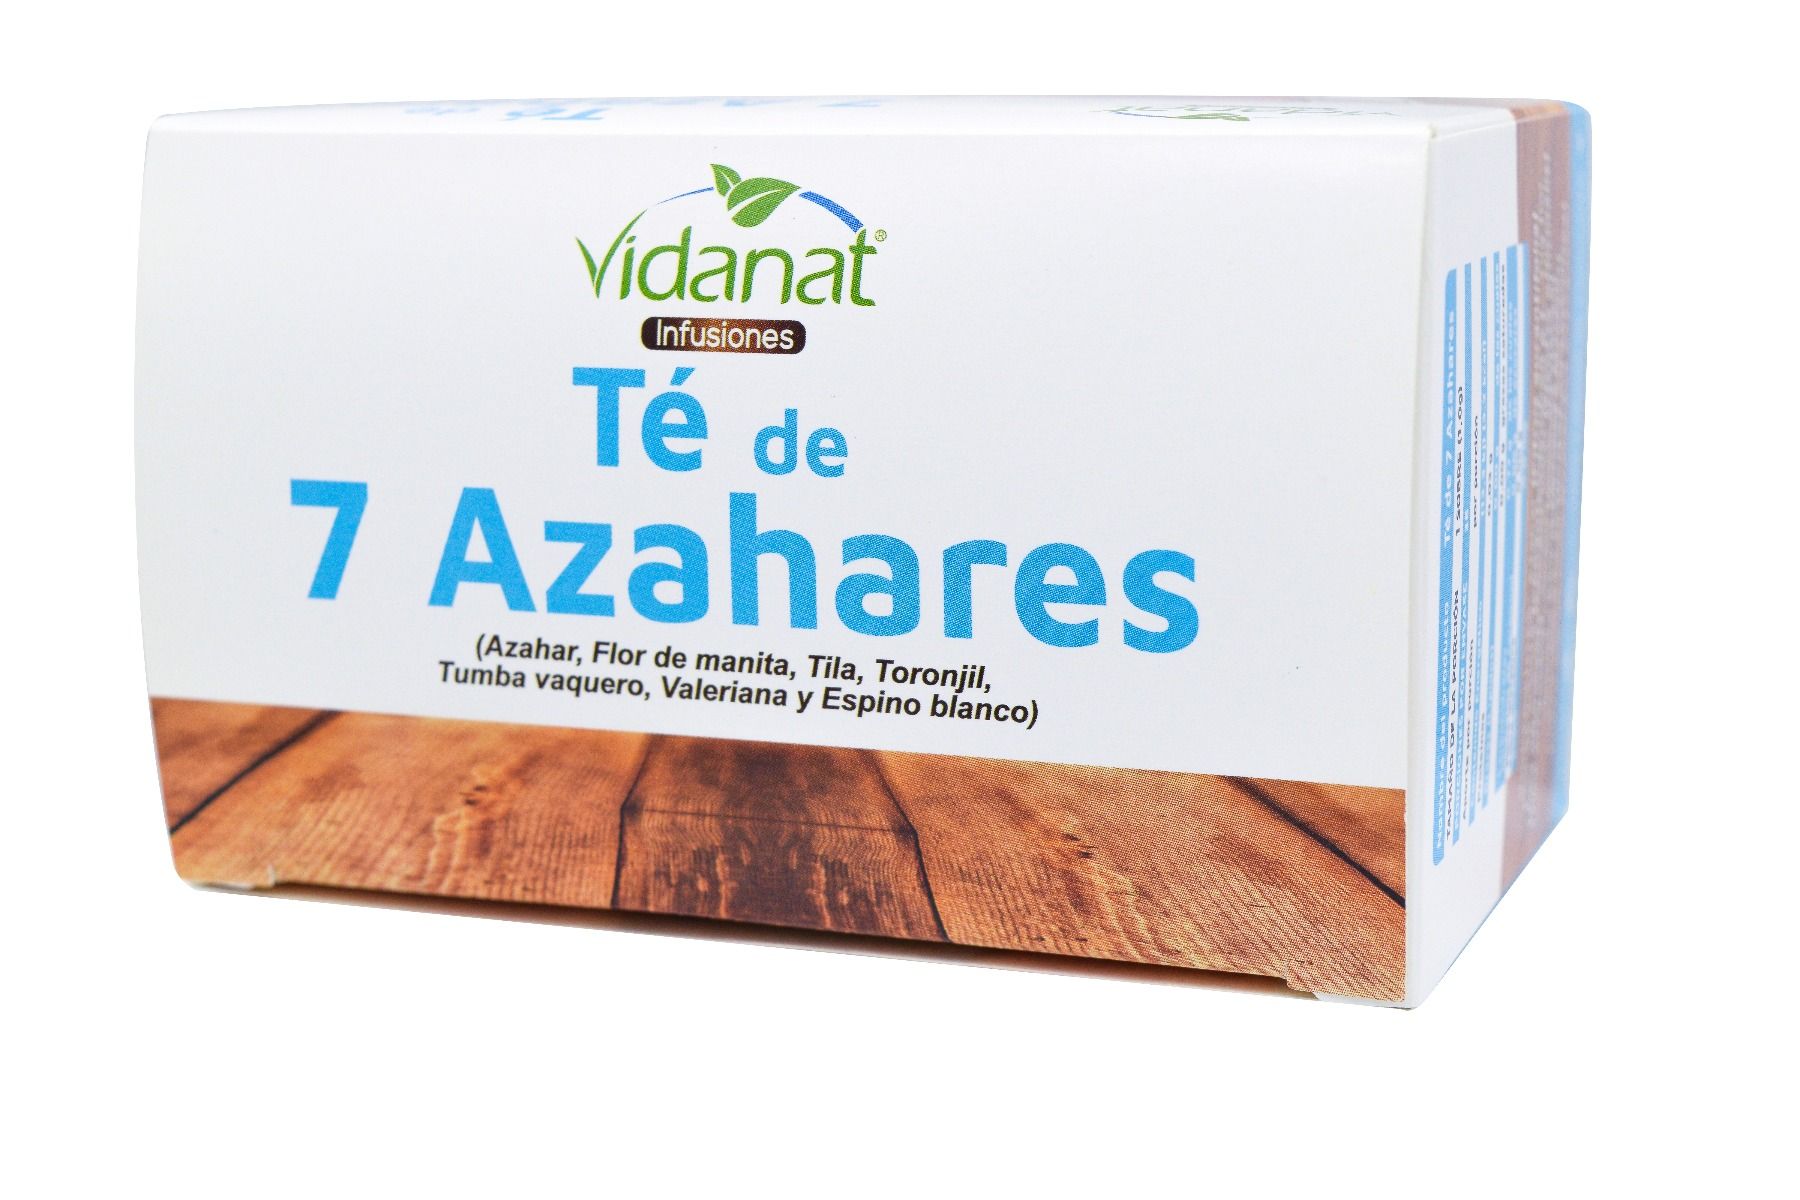 7 TEA AZAHARES 36 ENVELOPES VIDANAT